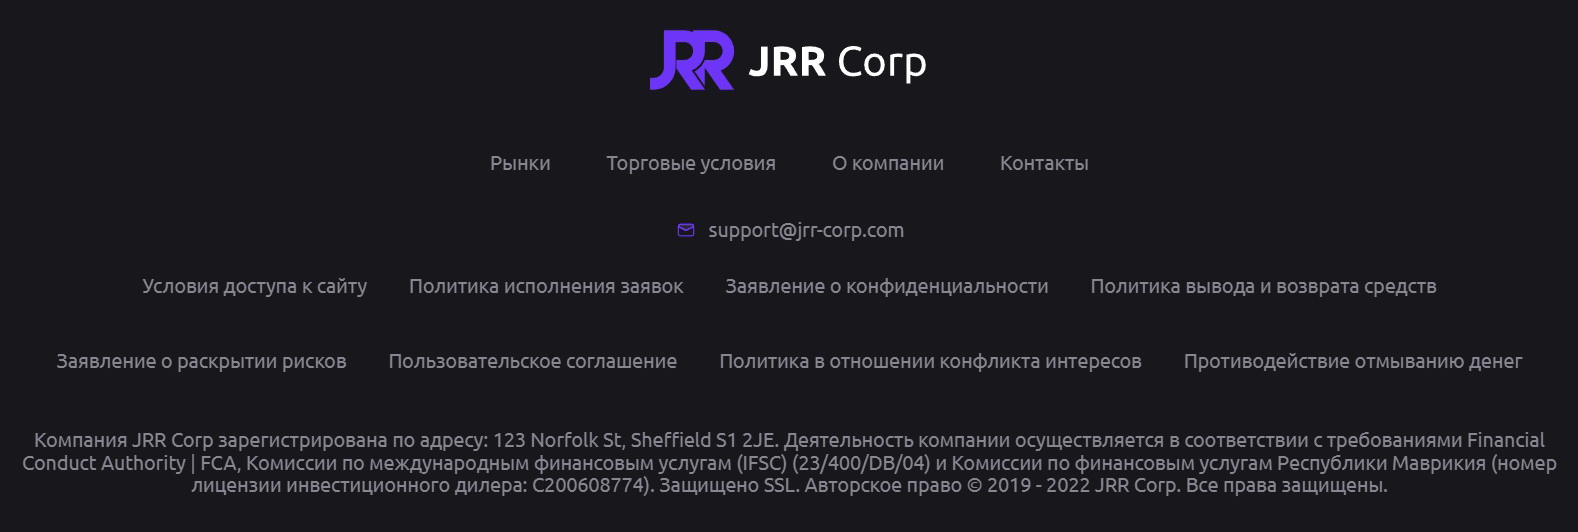 JRR Corp — лохоброкер с повышенной наглостью